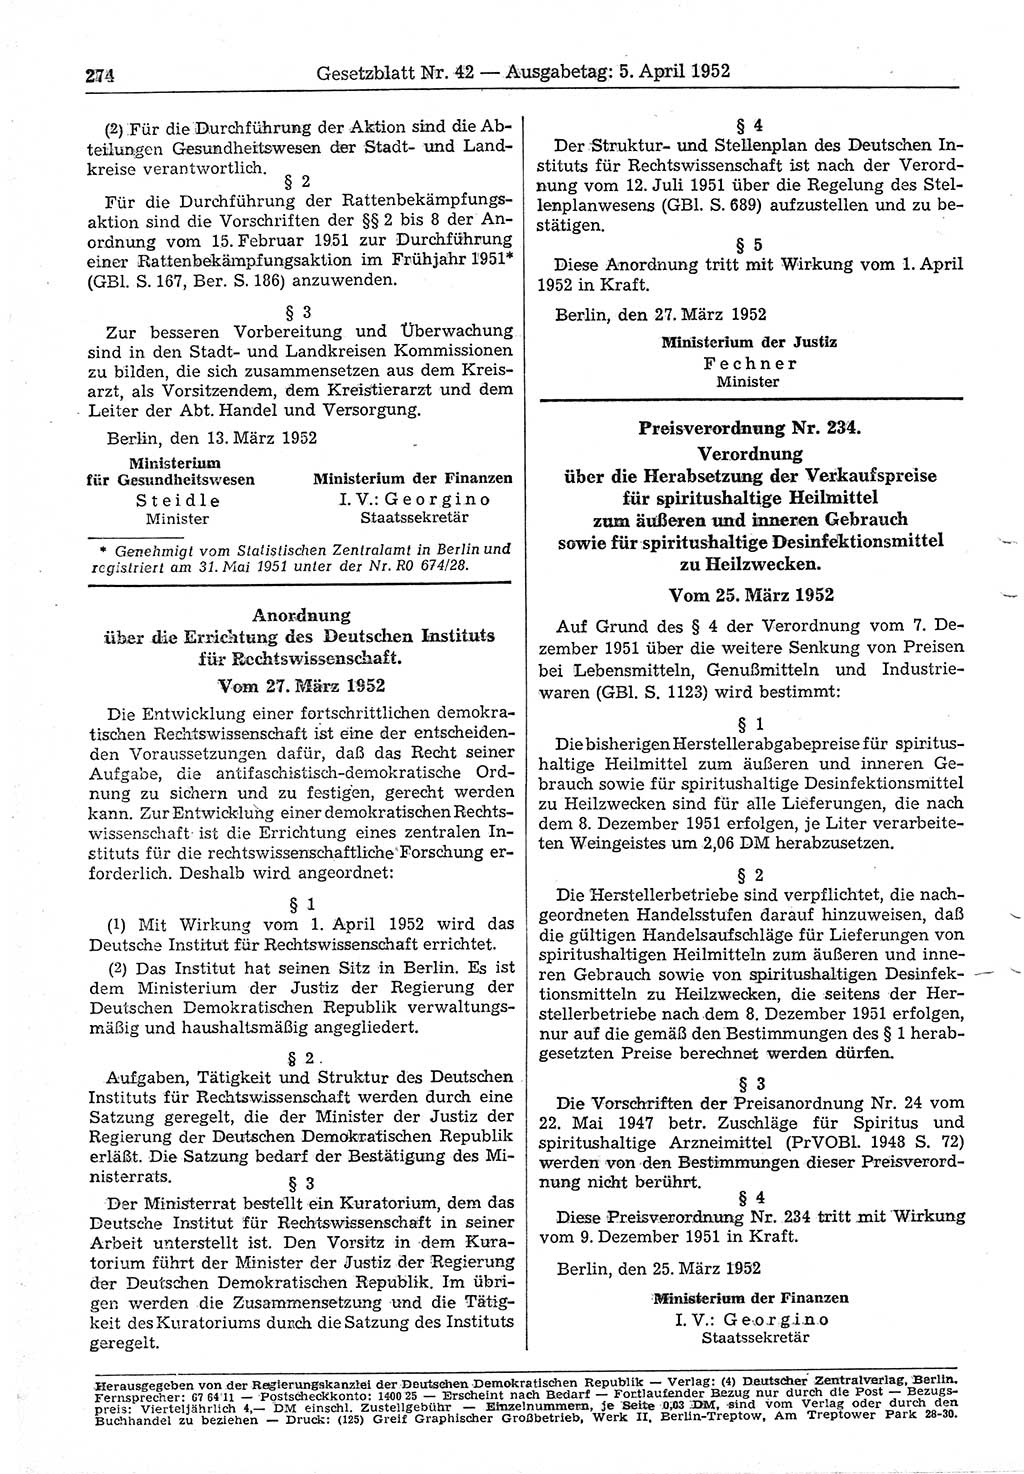 Gesetzblatt (GBl.) der Deutschen Demokratischen Republik (DDR) 1952, Seite 274 (GBl. DDR 1952, S. 274)